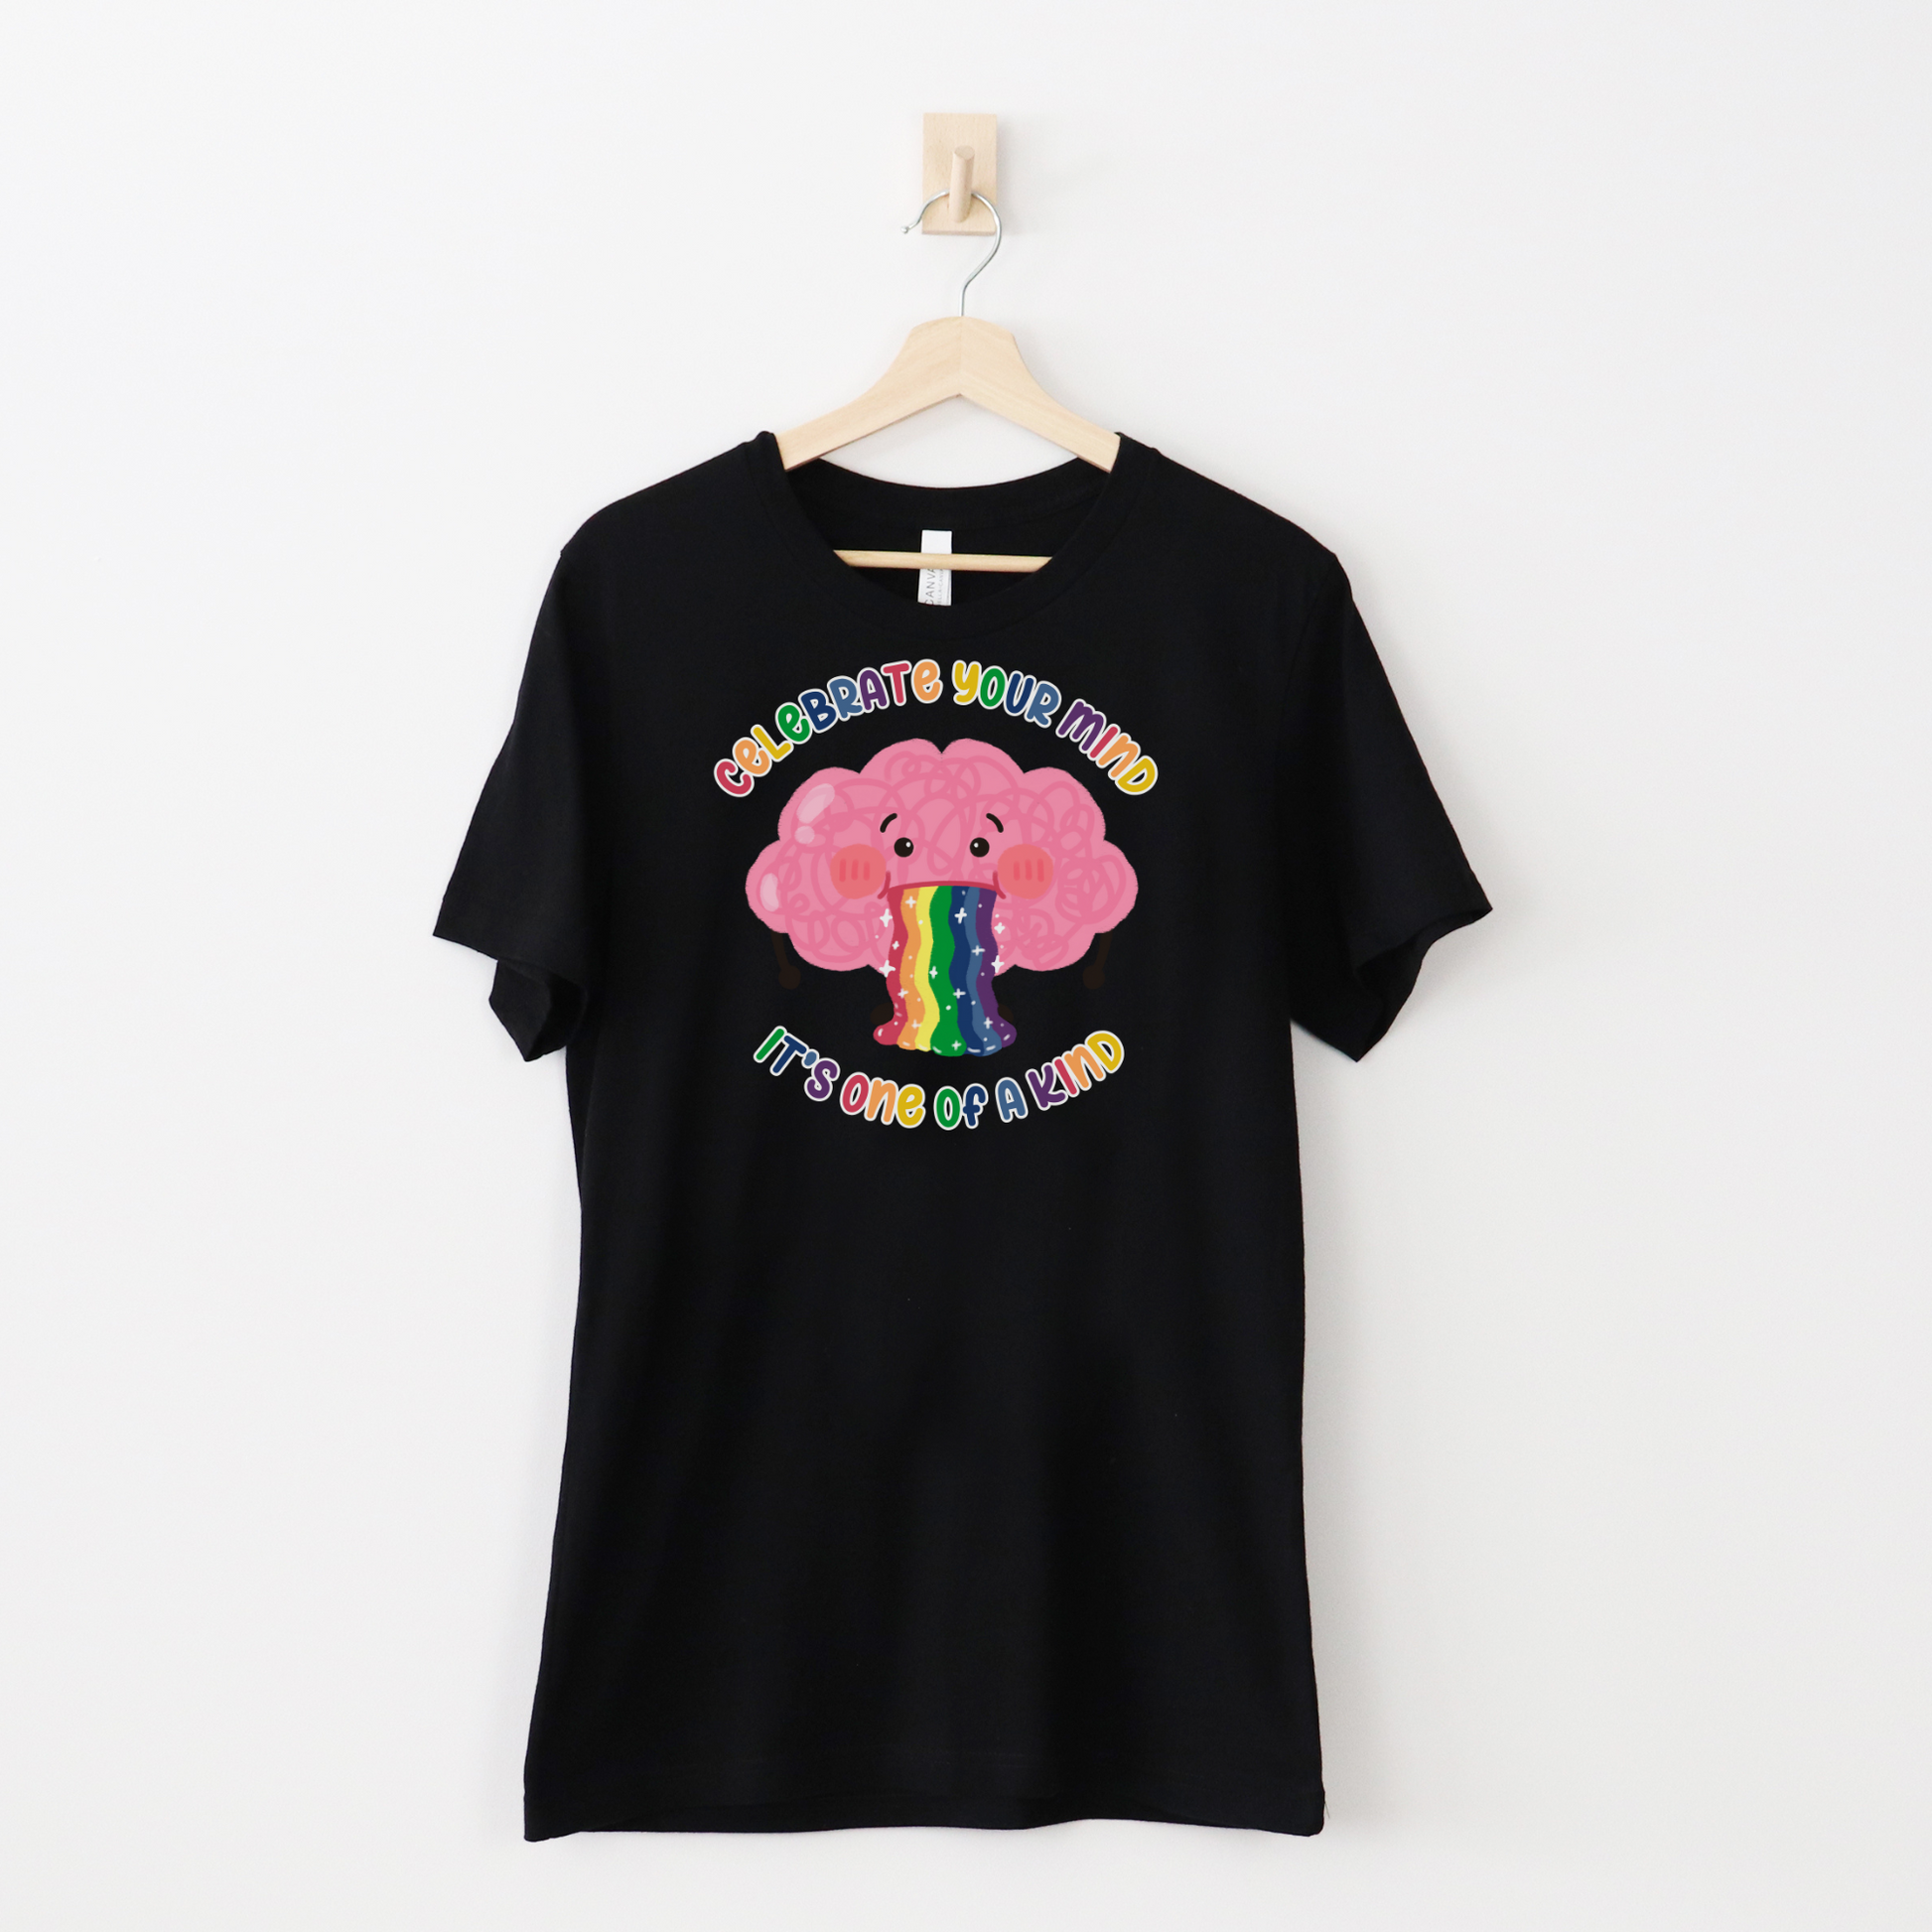 Celebrate ADHD T-Shirt - Cute Rainbow ADHD Brain Shirt - Embrace Your Diff